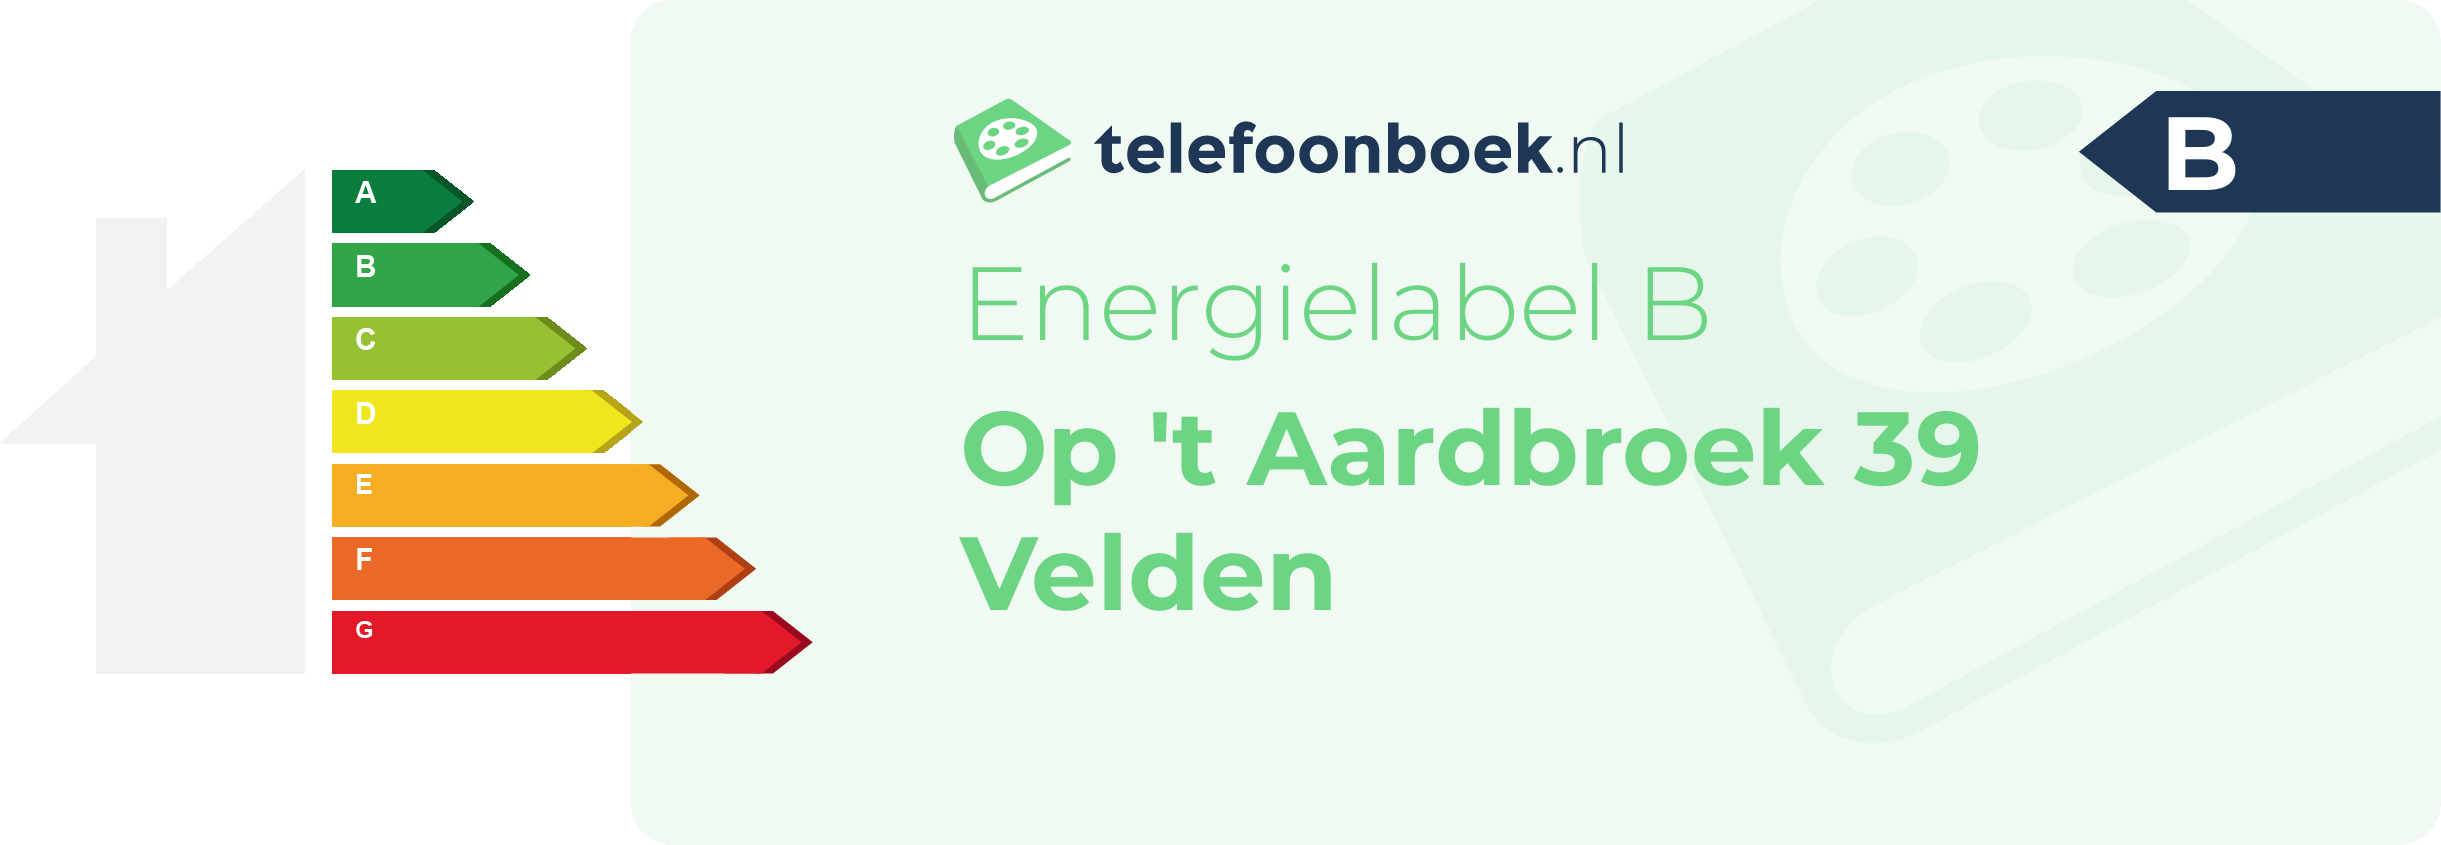 Energielabel Op 't Aardbroek 39 Velden